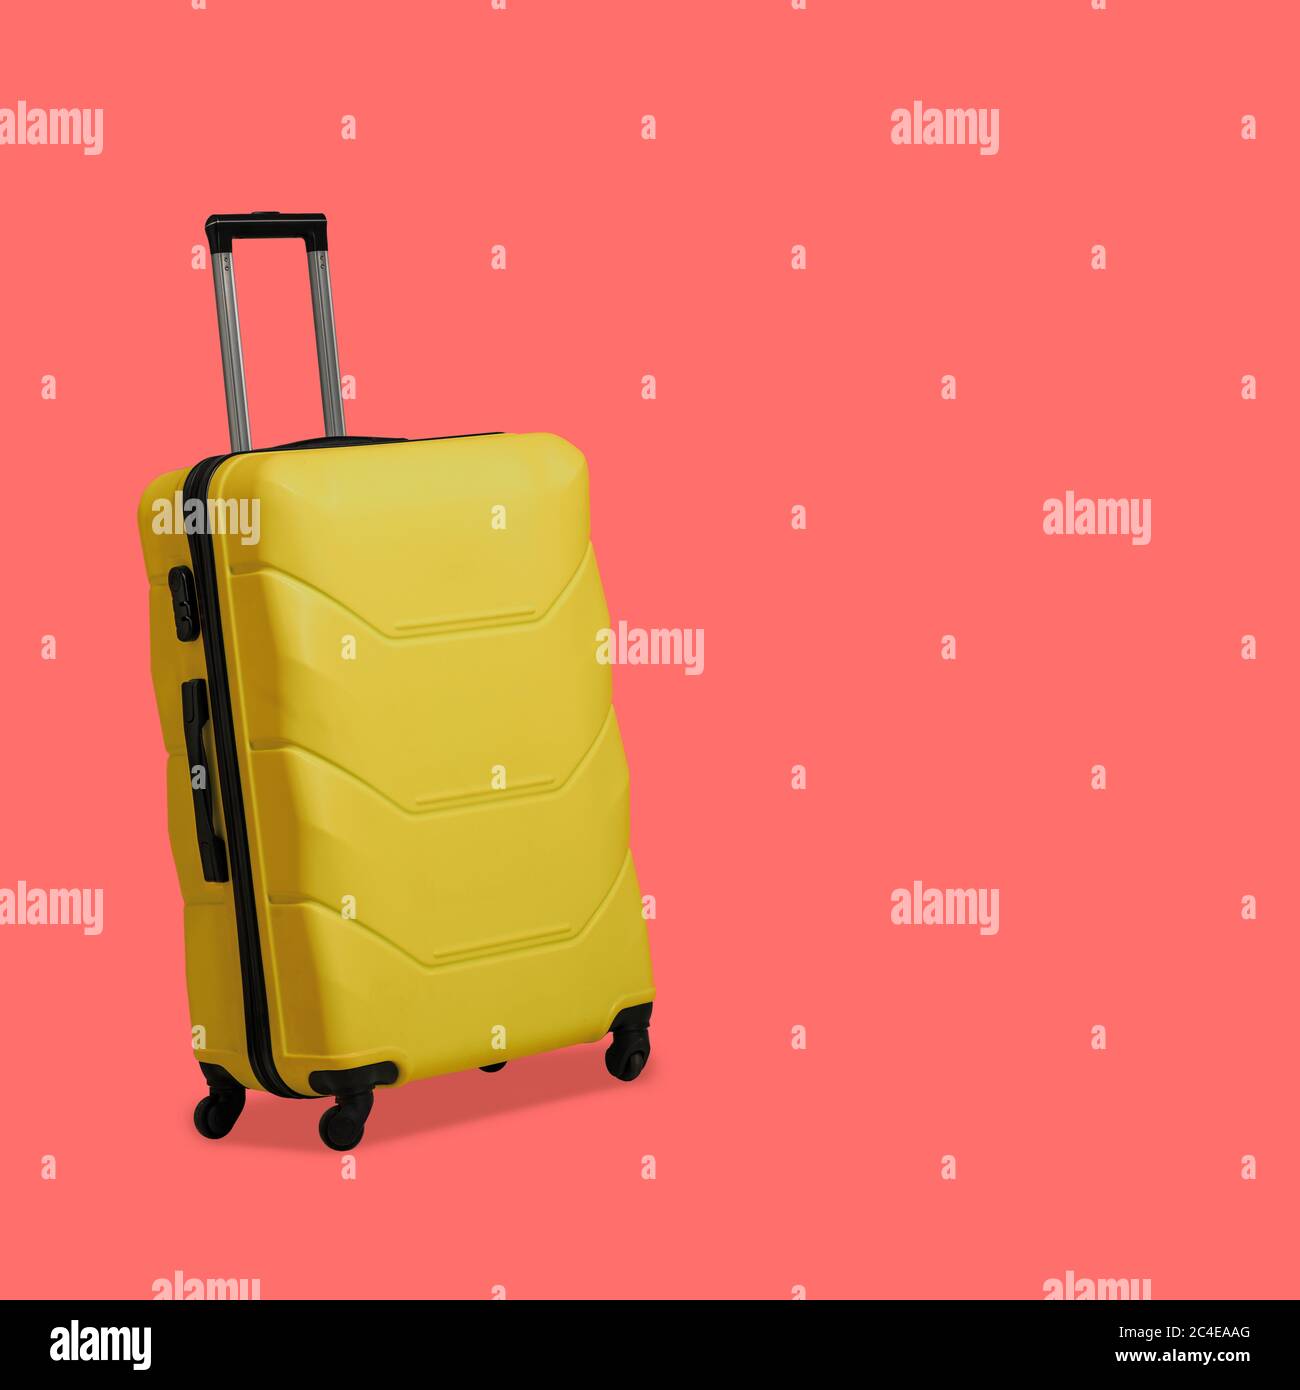 Valise jaune en plastique isolée sur fond rose. Valise avec roulettes et poignée télescopique rétractable. Concept de voyage. Modèle vide pour les réseaux sociaux Banque D'Images